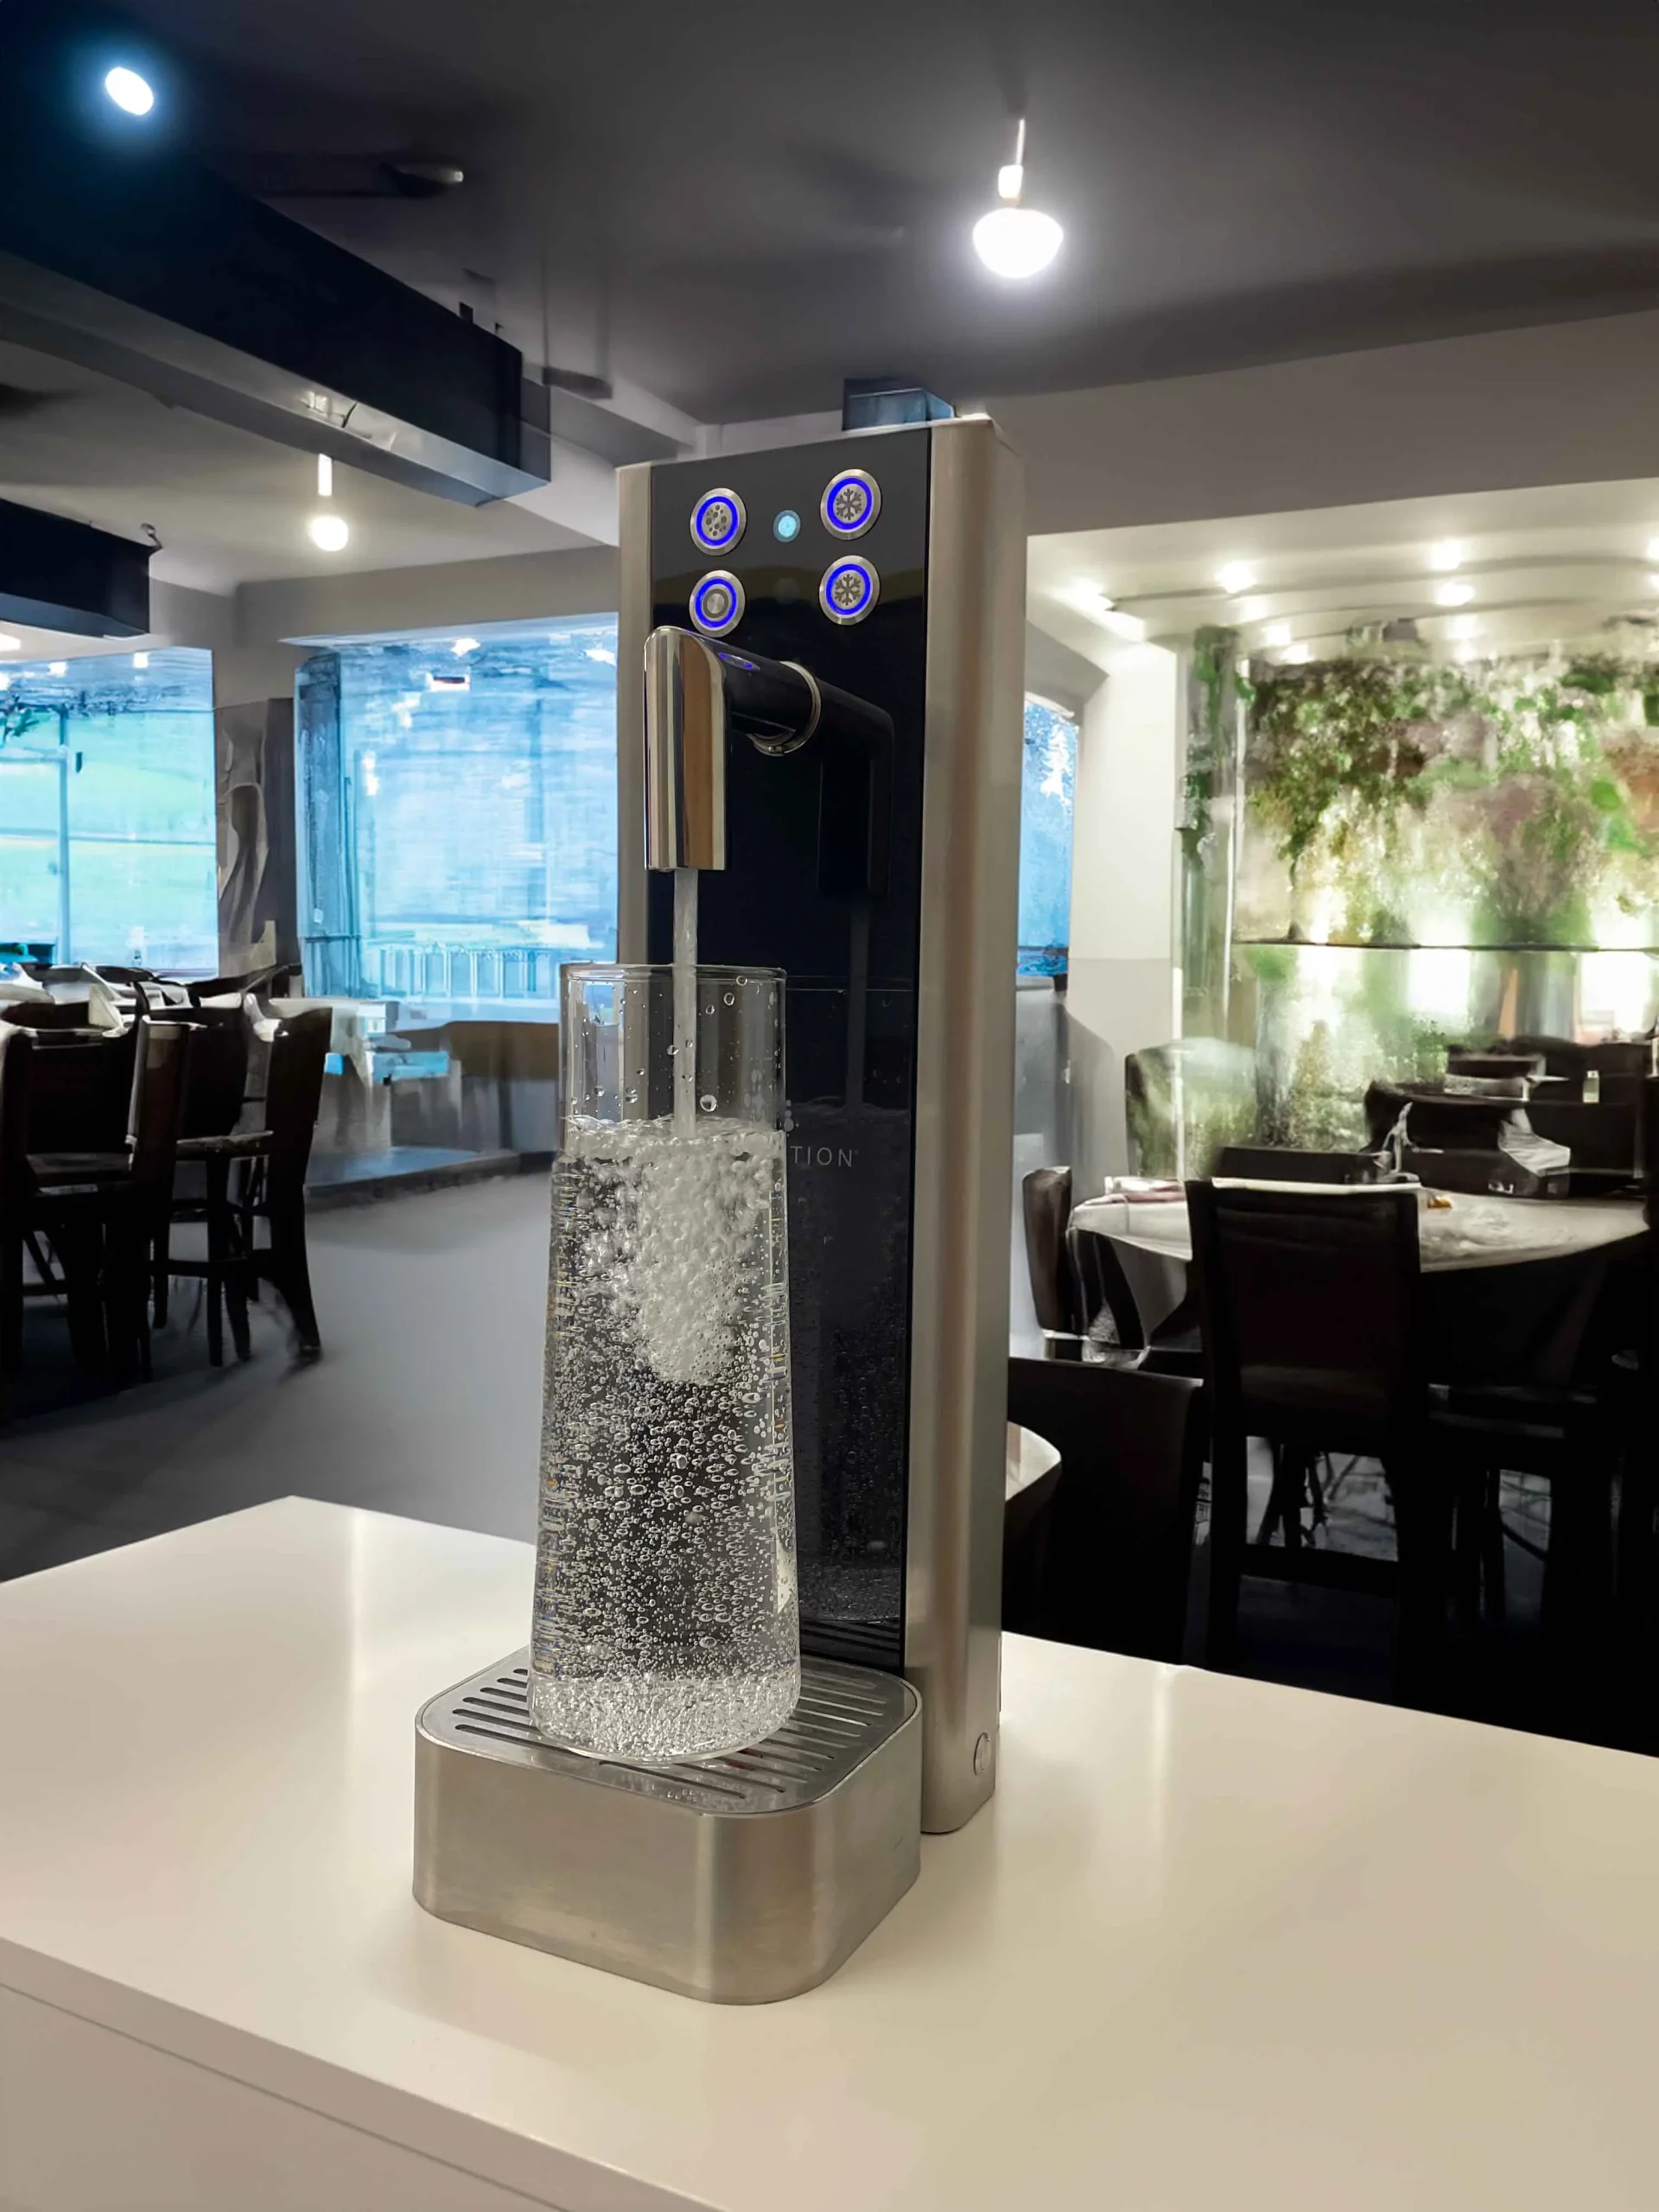 Acqua Fountain füllt eine Wasserkaraffe in einem Restaurant